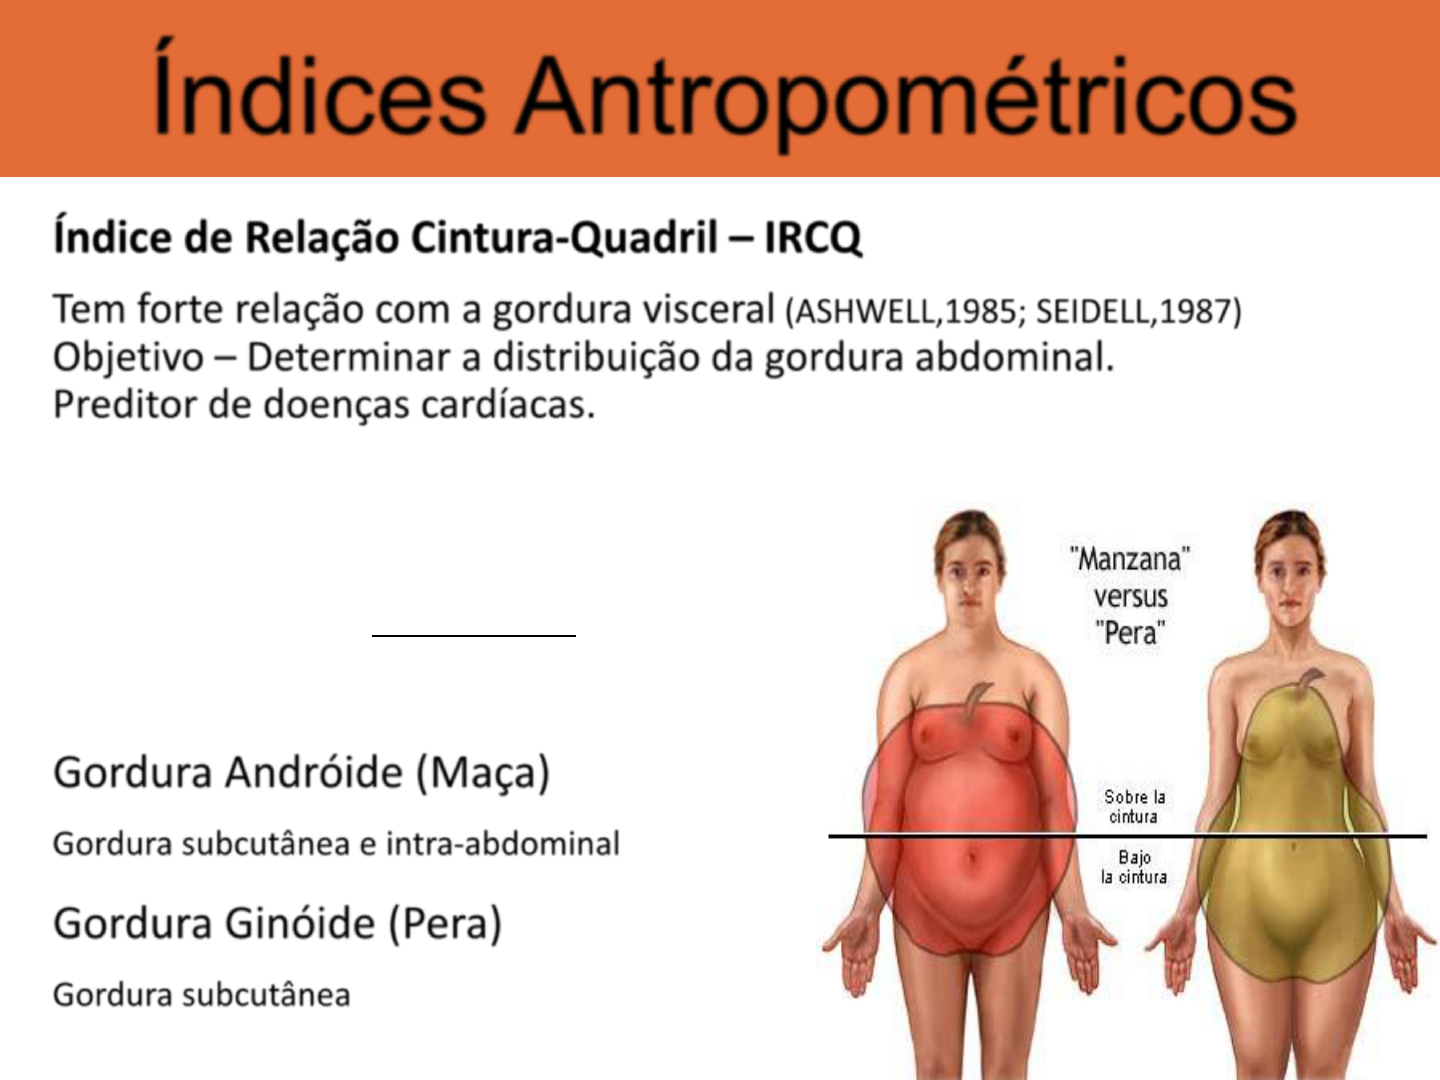 5. Indices Antropometricos - Educação Física